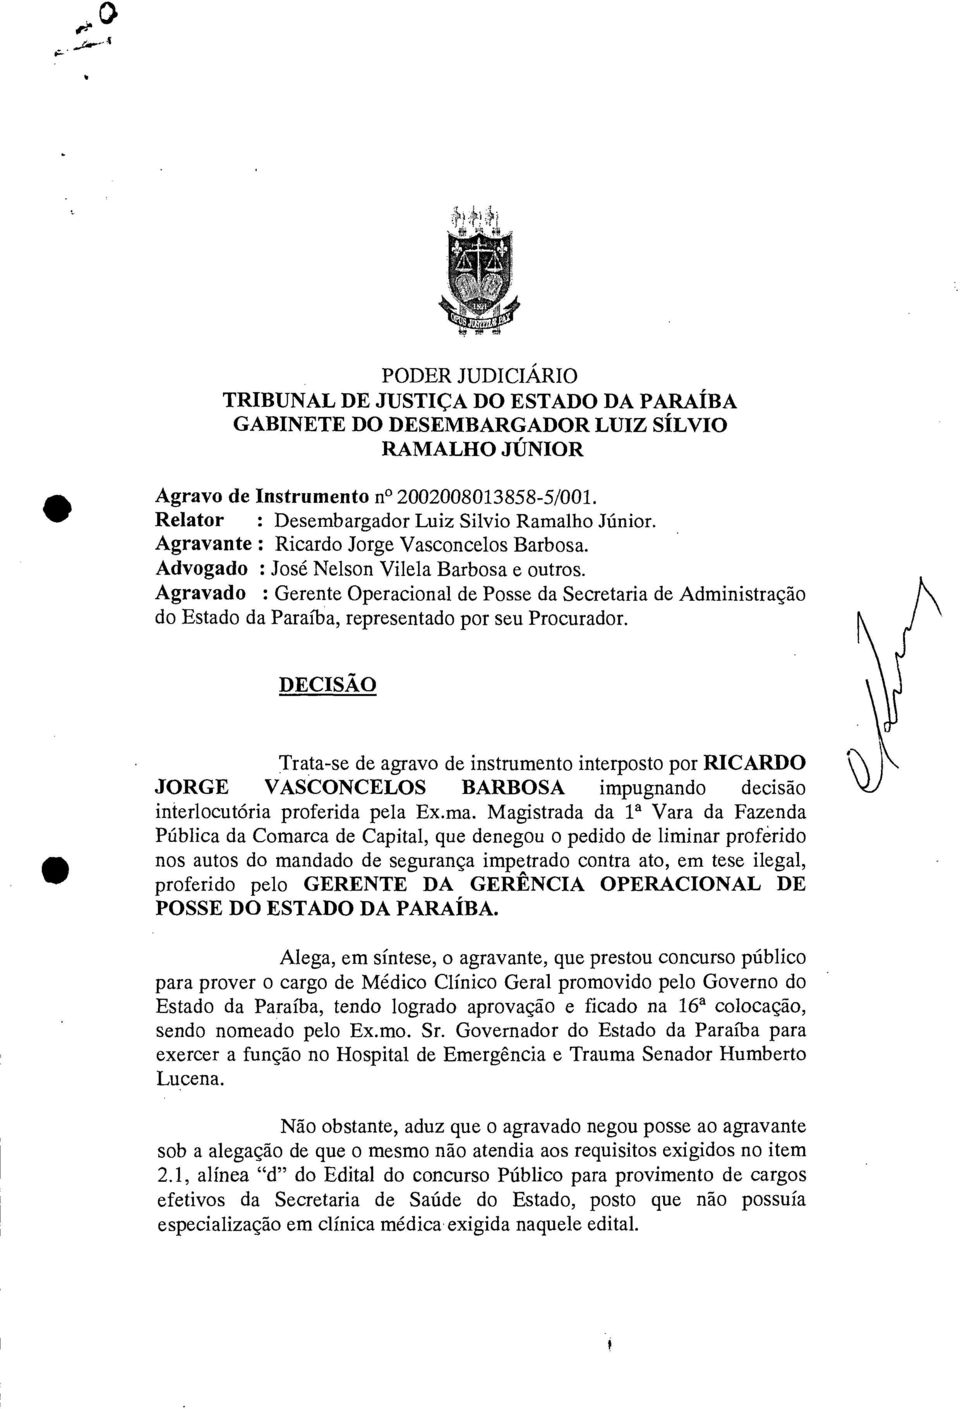 Agravado : Gerente Operacional de Posse da Secretaria de Administração do Estado da Paraíba, representado por seu Procurador.